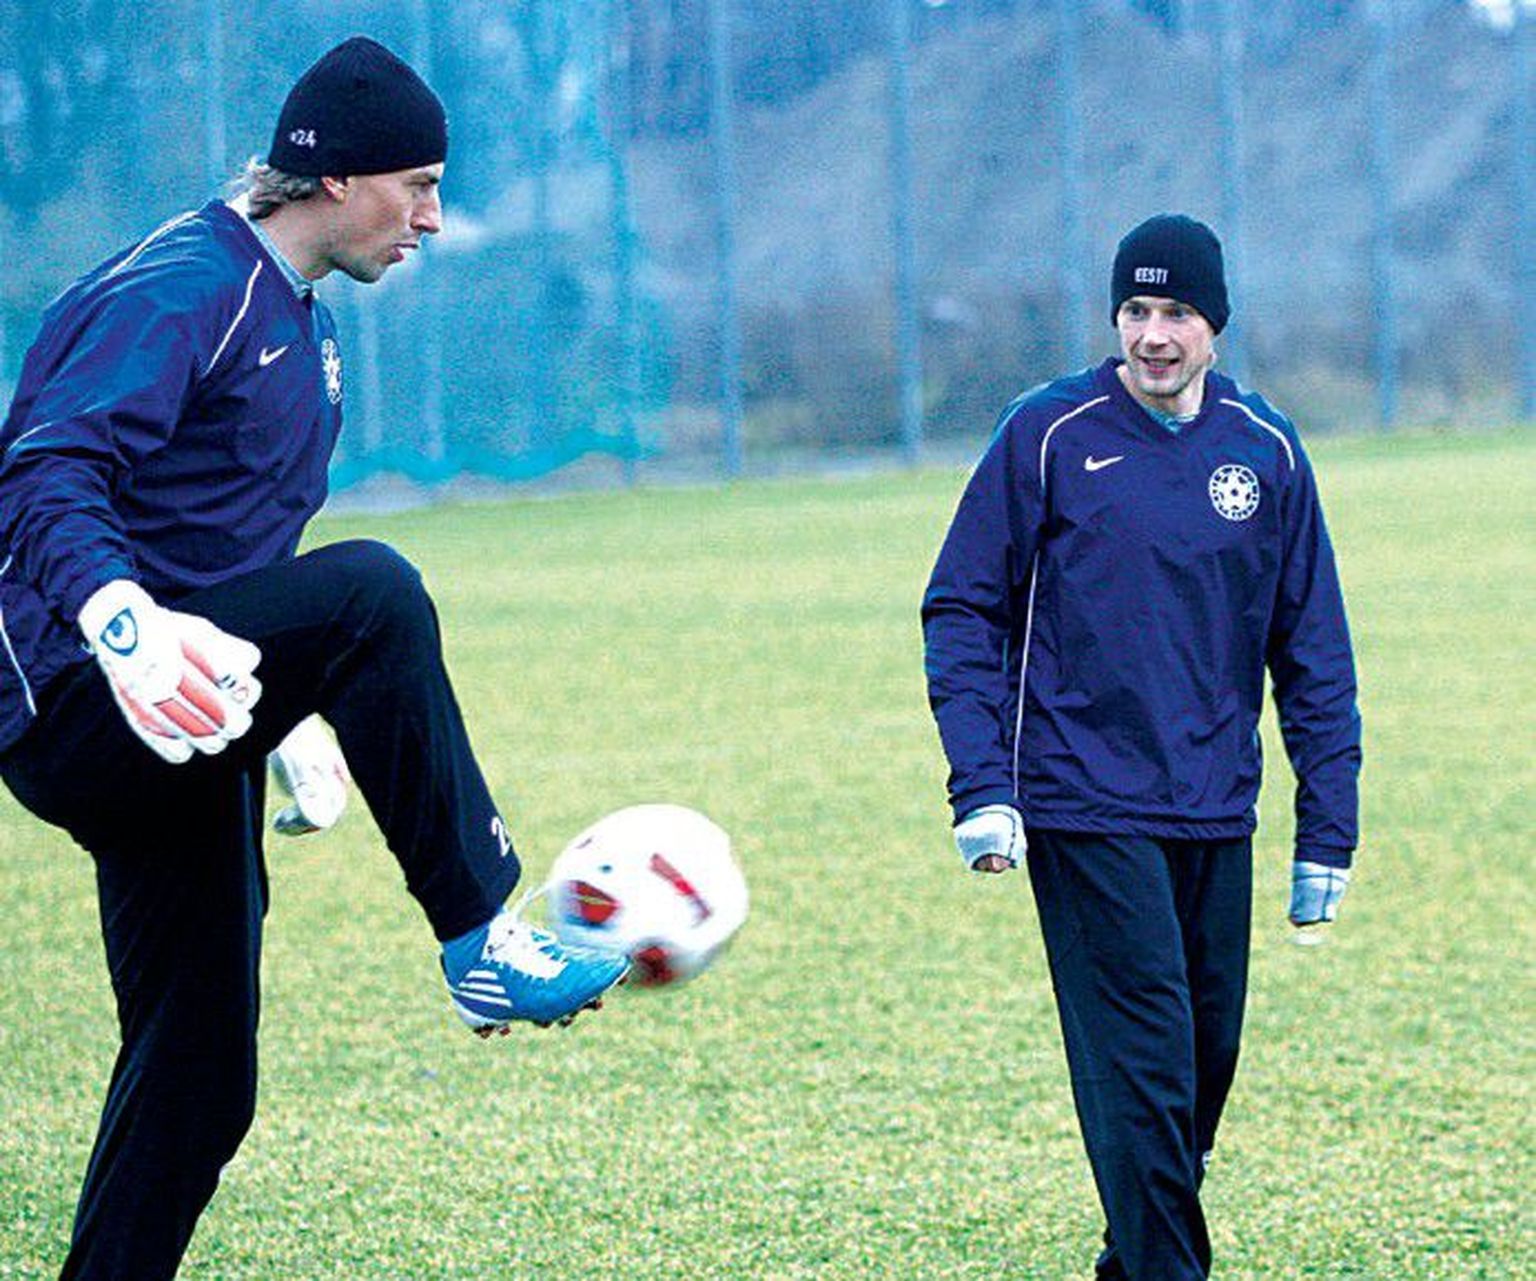 Сергей Парейко (слева), играющий за «Томь», и Александр Дмитриев из норвежского Hönefoss хотят попробовать свои силы в других, более сильных клубах.